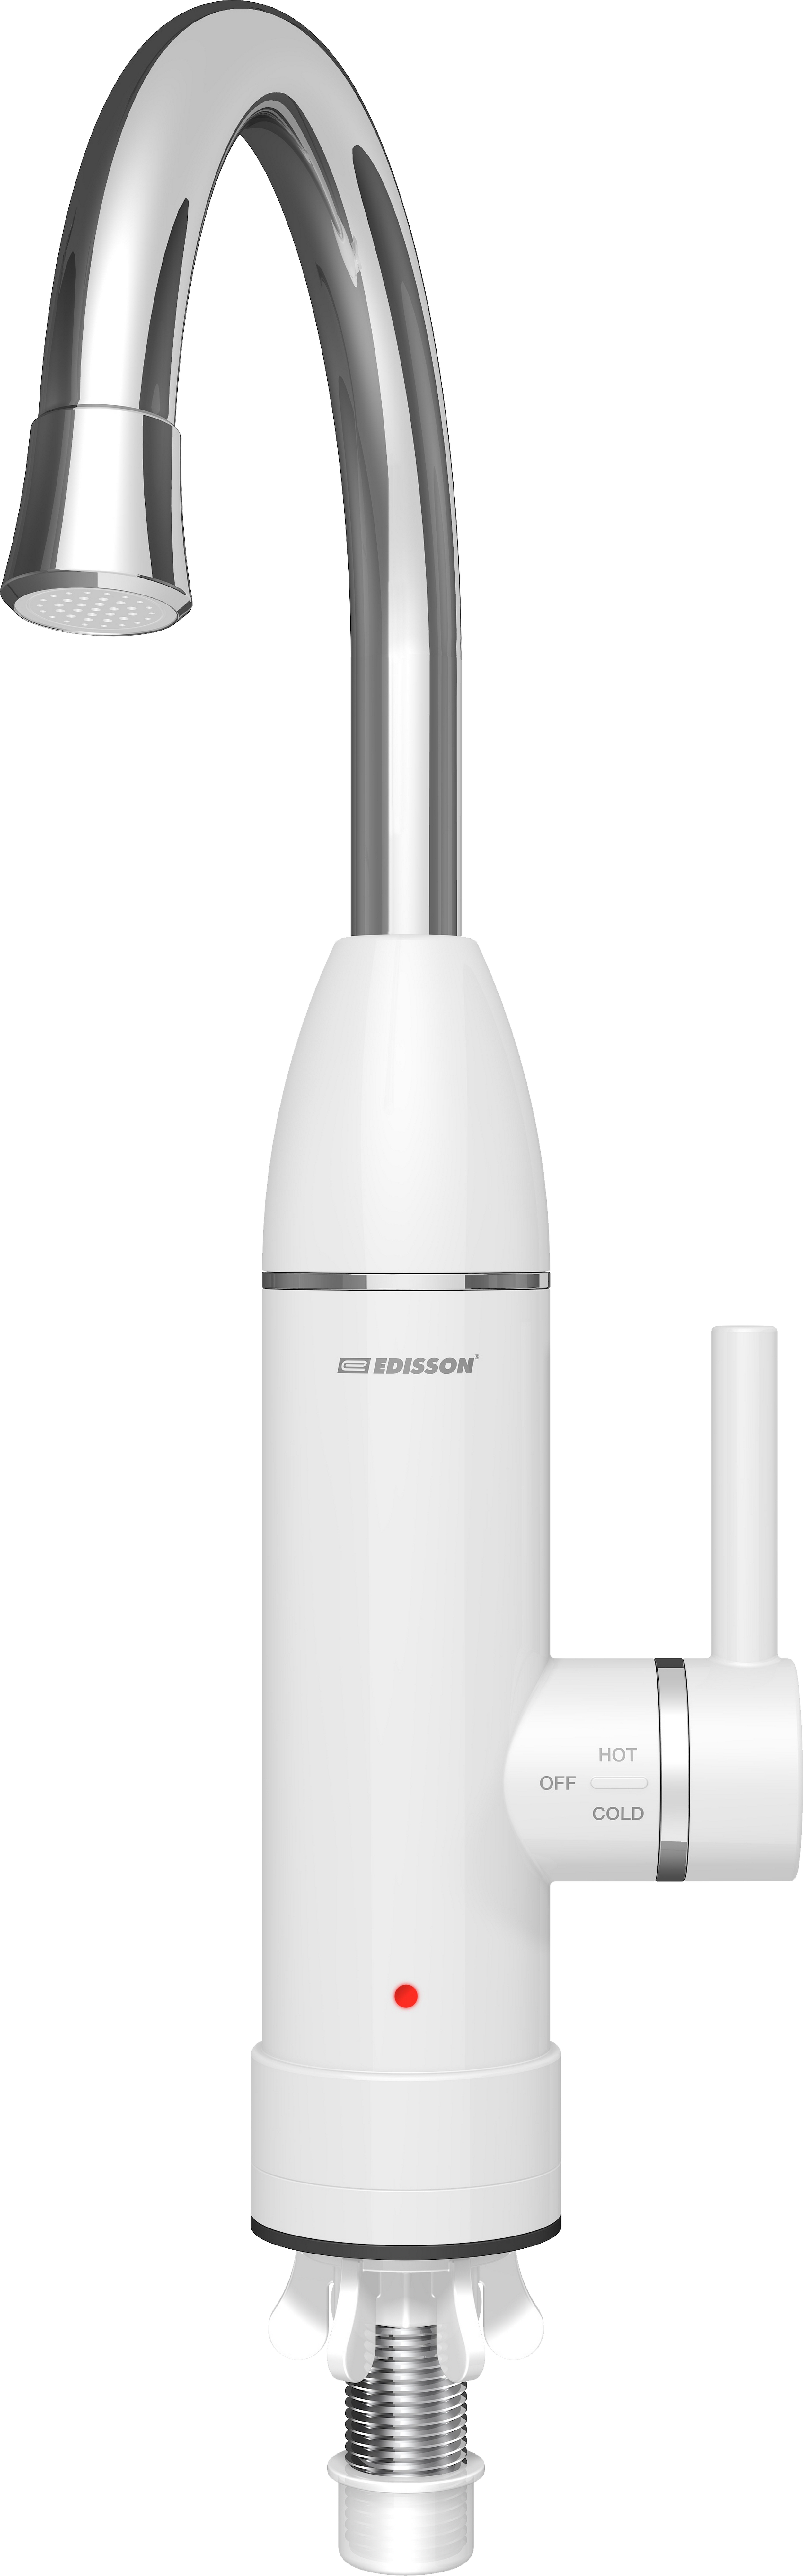 Отзывы проточный водонагреватель Edisson Mini 3000